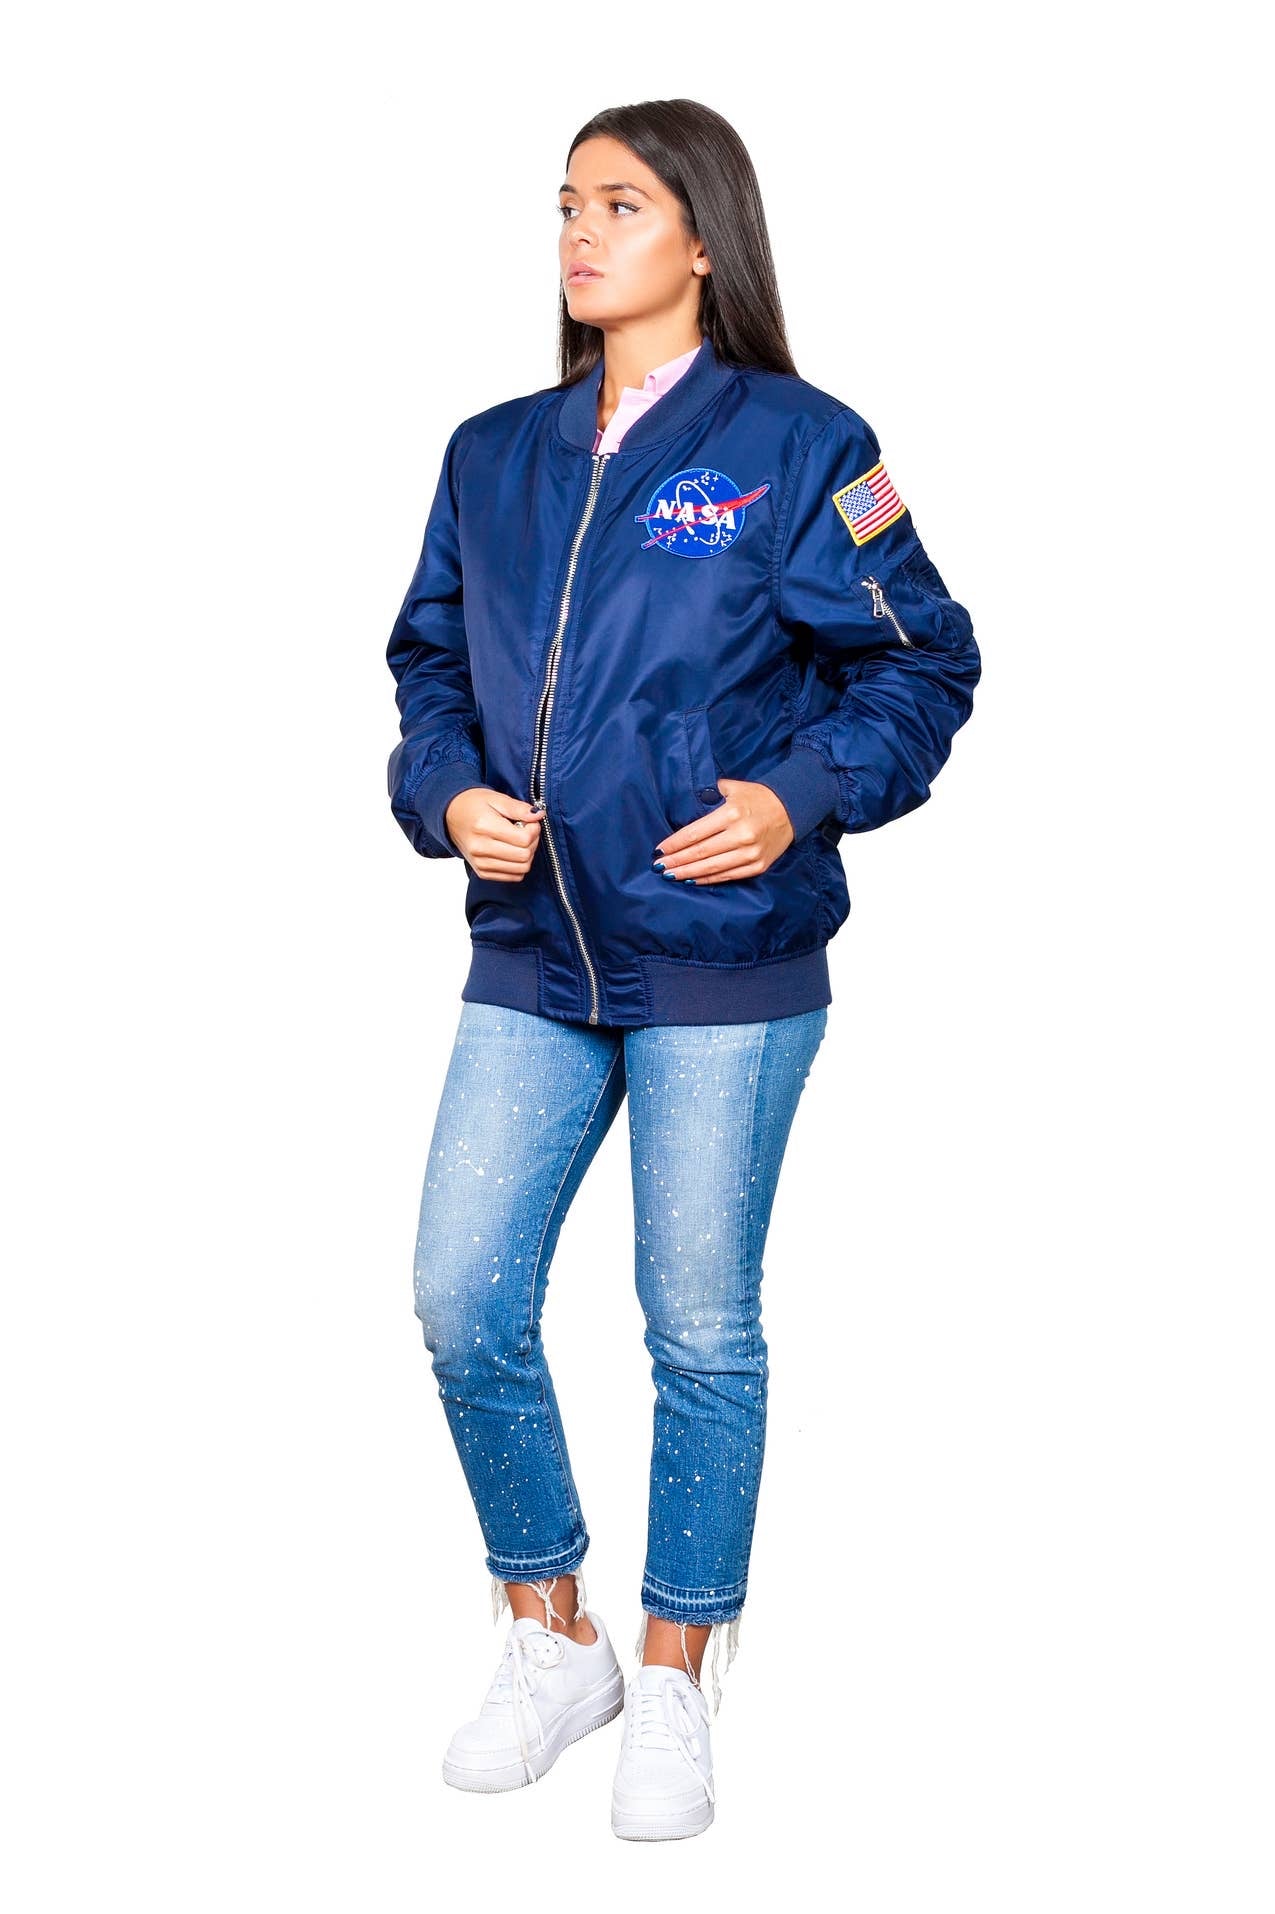 Nasa Blue jacket for unisex adults.